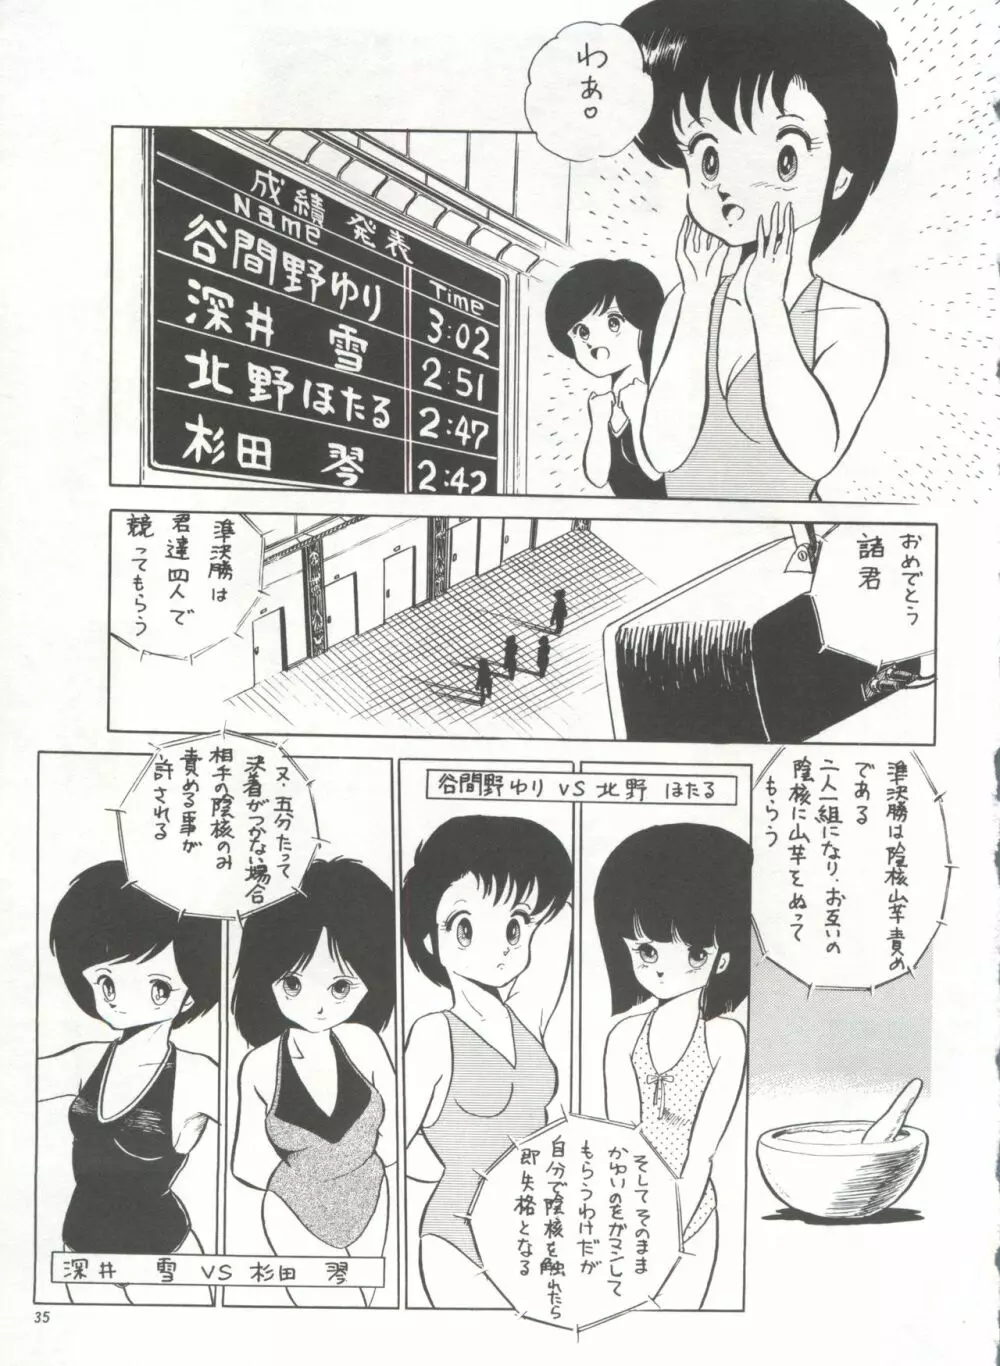 美少女症候群 Lolita Syndrome 38ページ